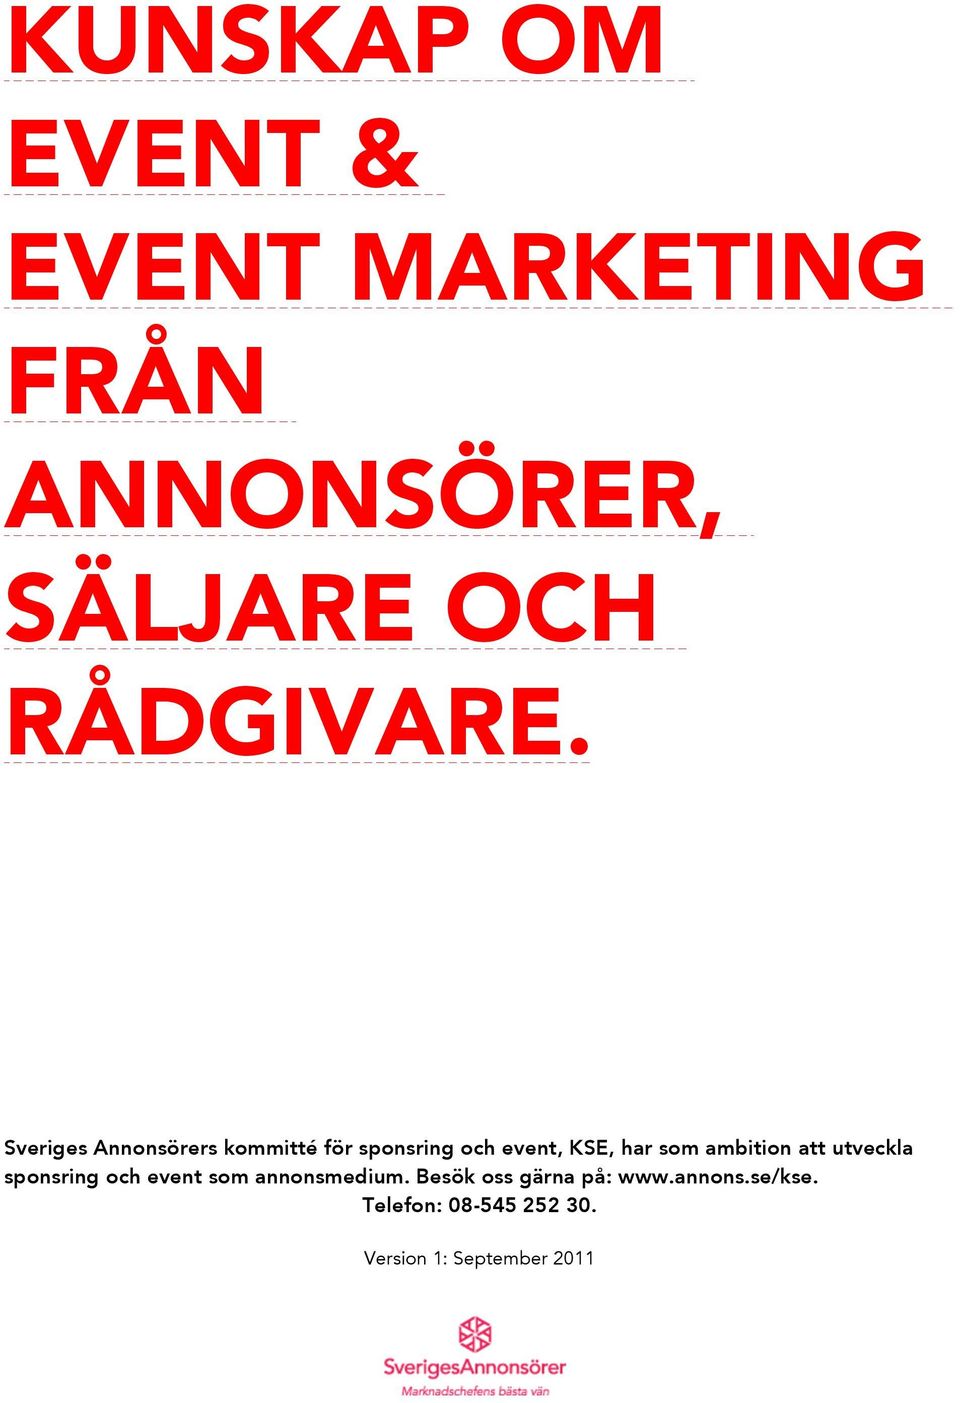 Sveriges Annonsörers kommitté för sponsring och event, KSE, har som